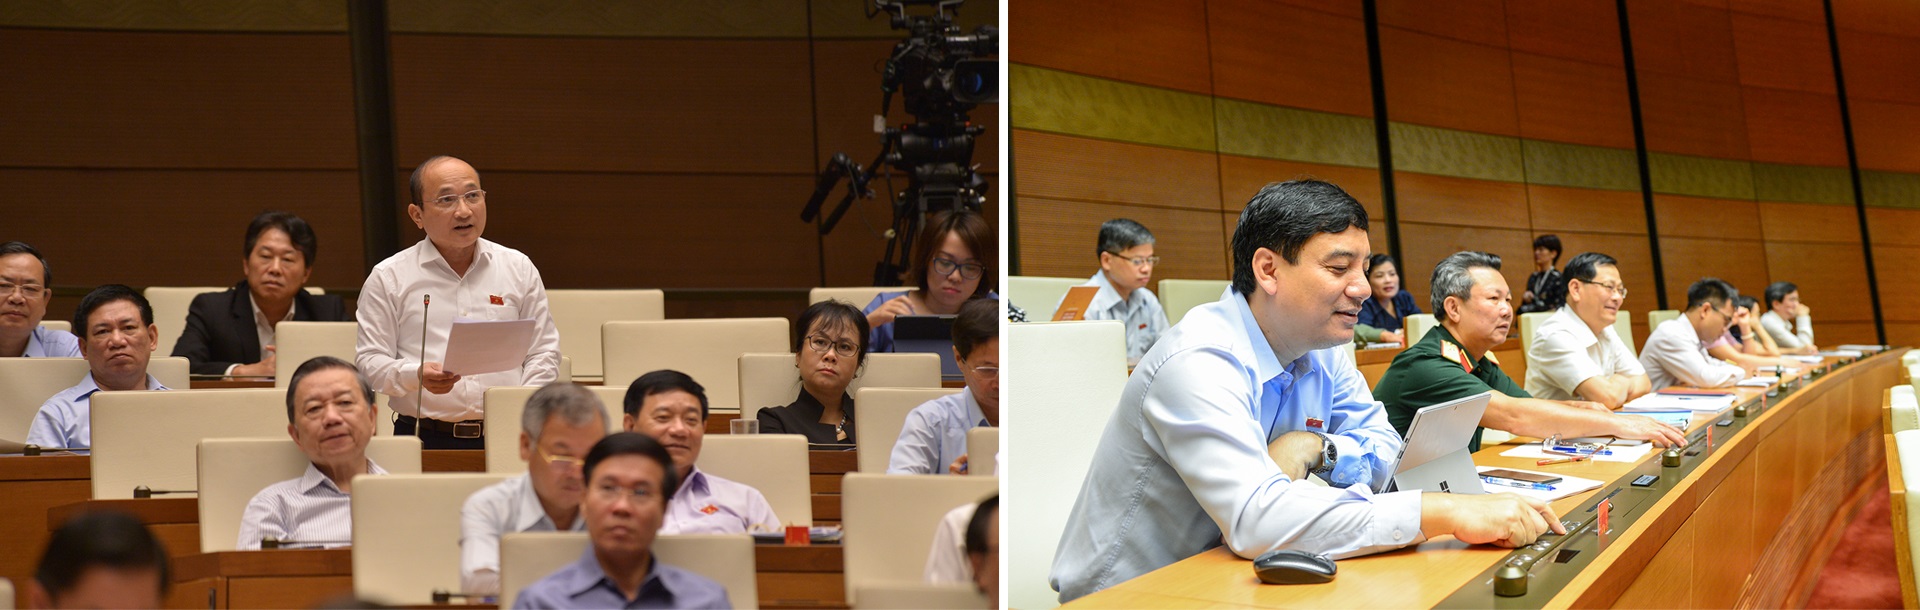 Đoàn đại biểu Quốc hội tỉnh Nghệ An phát biểu thảo luận và ấn nút thông qua luật, dự án luật tại kỳ họp Quốc hội.